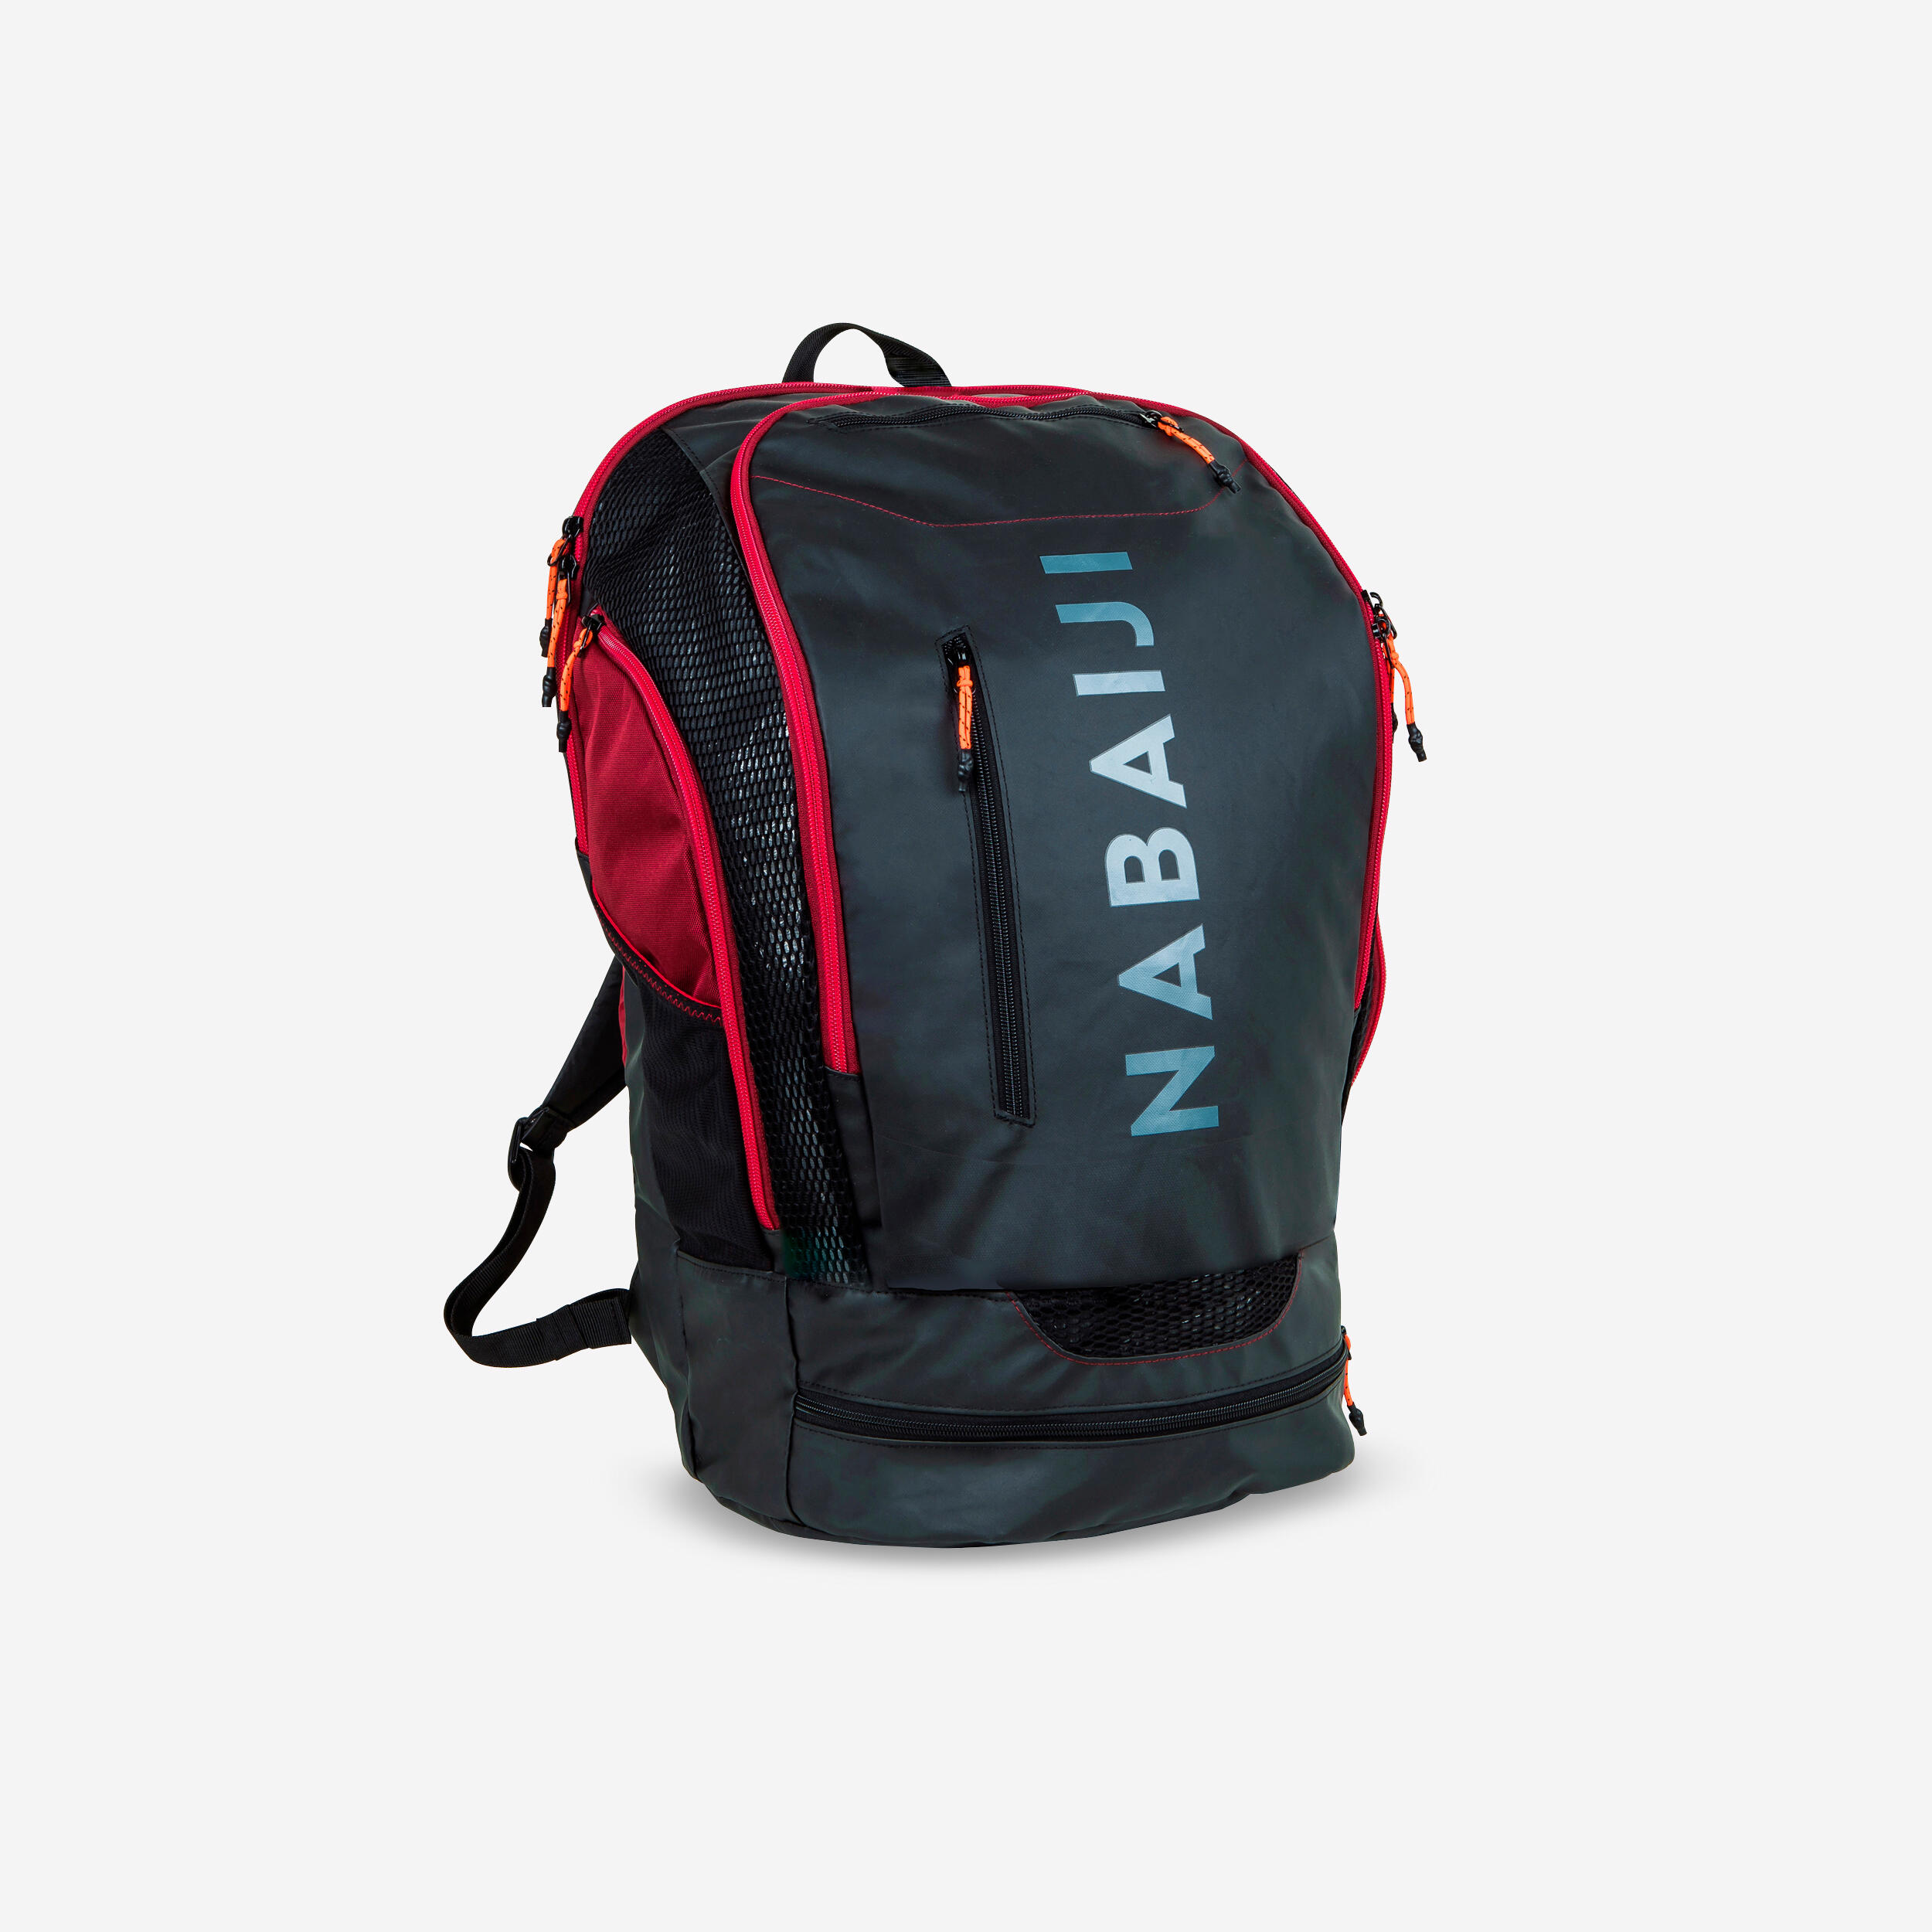 Waterproof bag IPX6 30 L orange | Decathlon